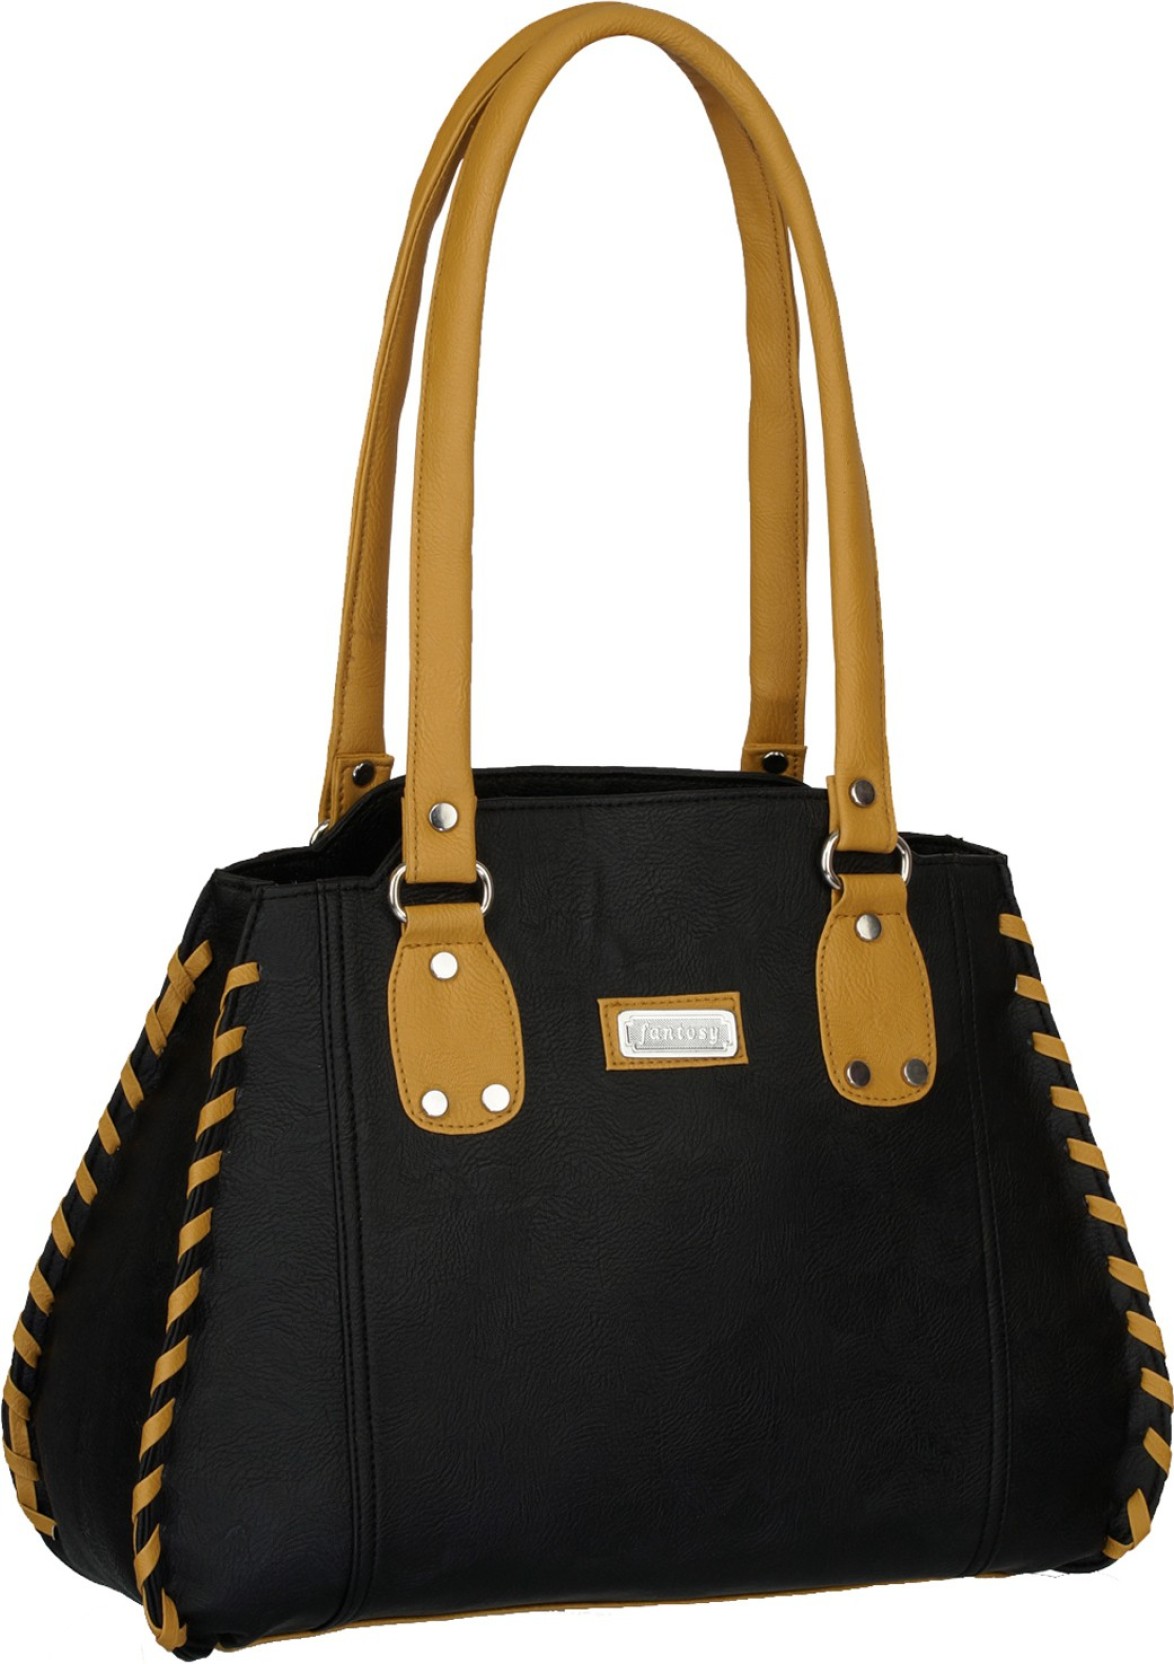 Buy Fantosy Hand-held Bag Black Online @ Best Price in India | 0